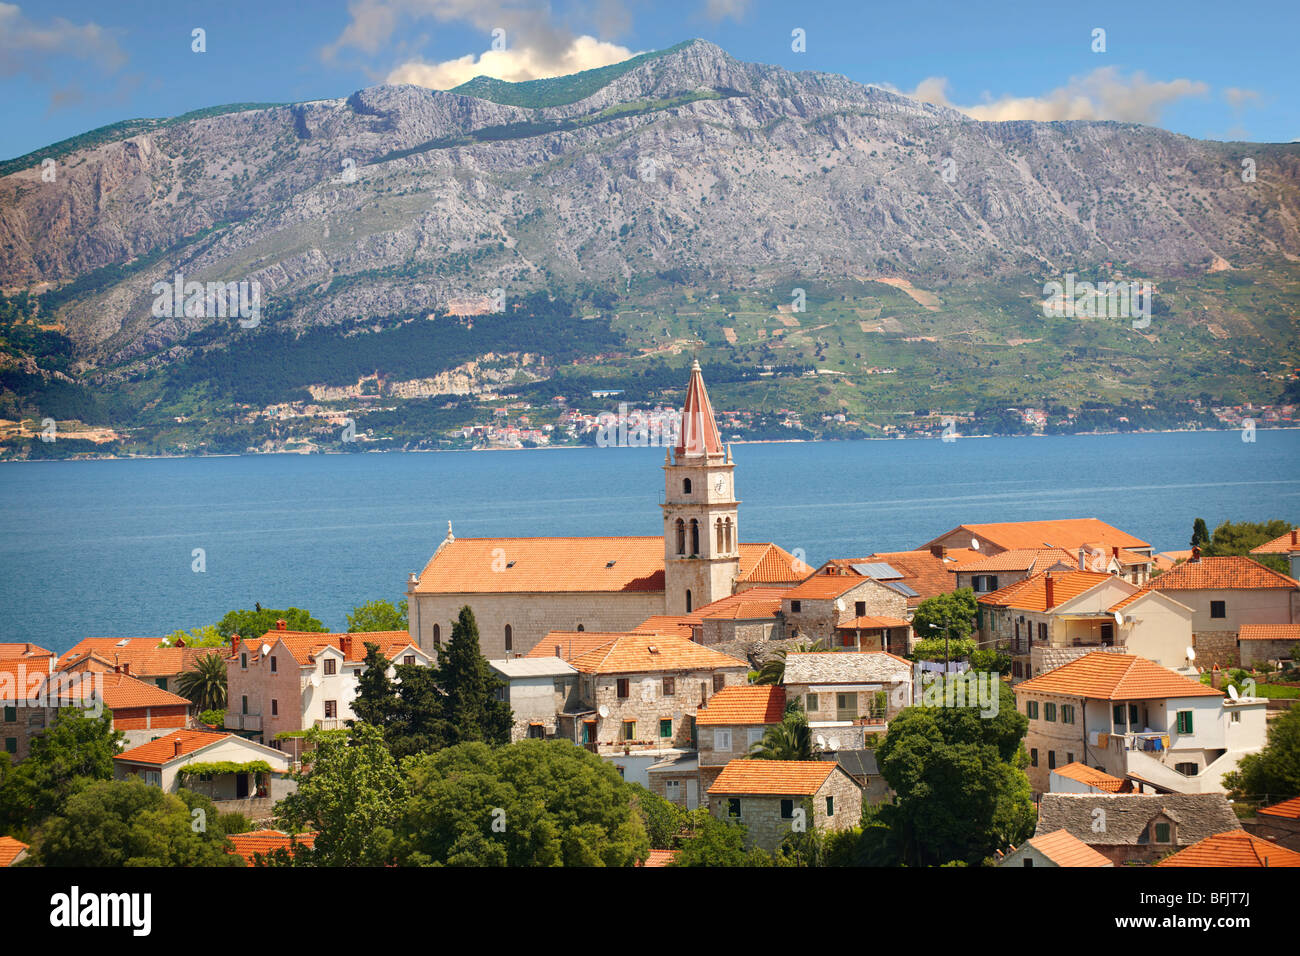 Die dalmatische Küste von Splitska auf der Insel Brač, Kroatien Stockfoto